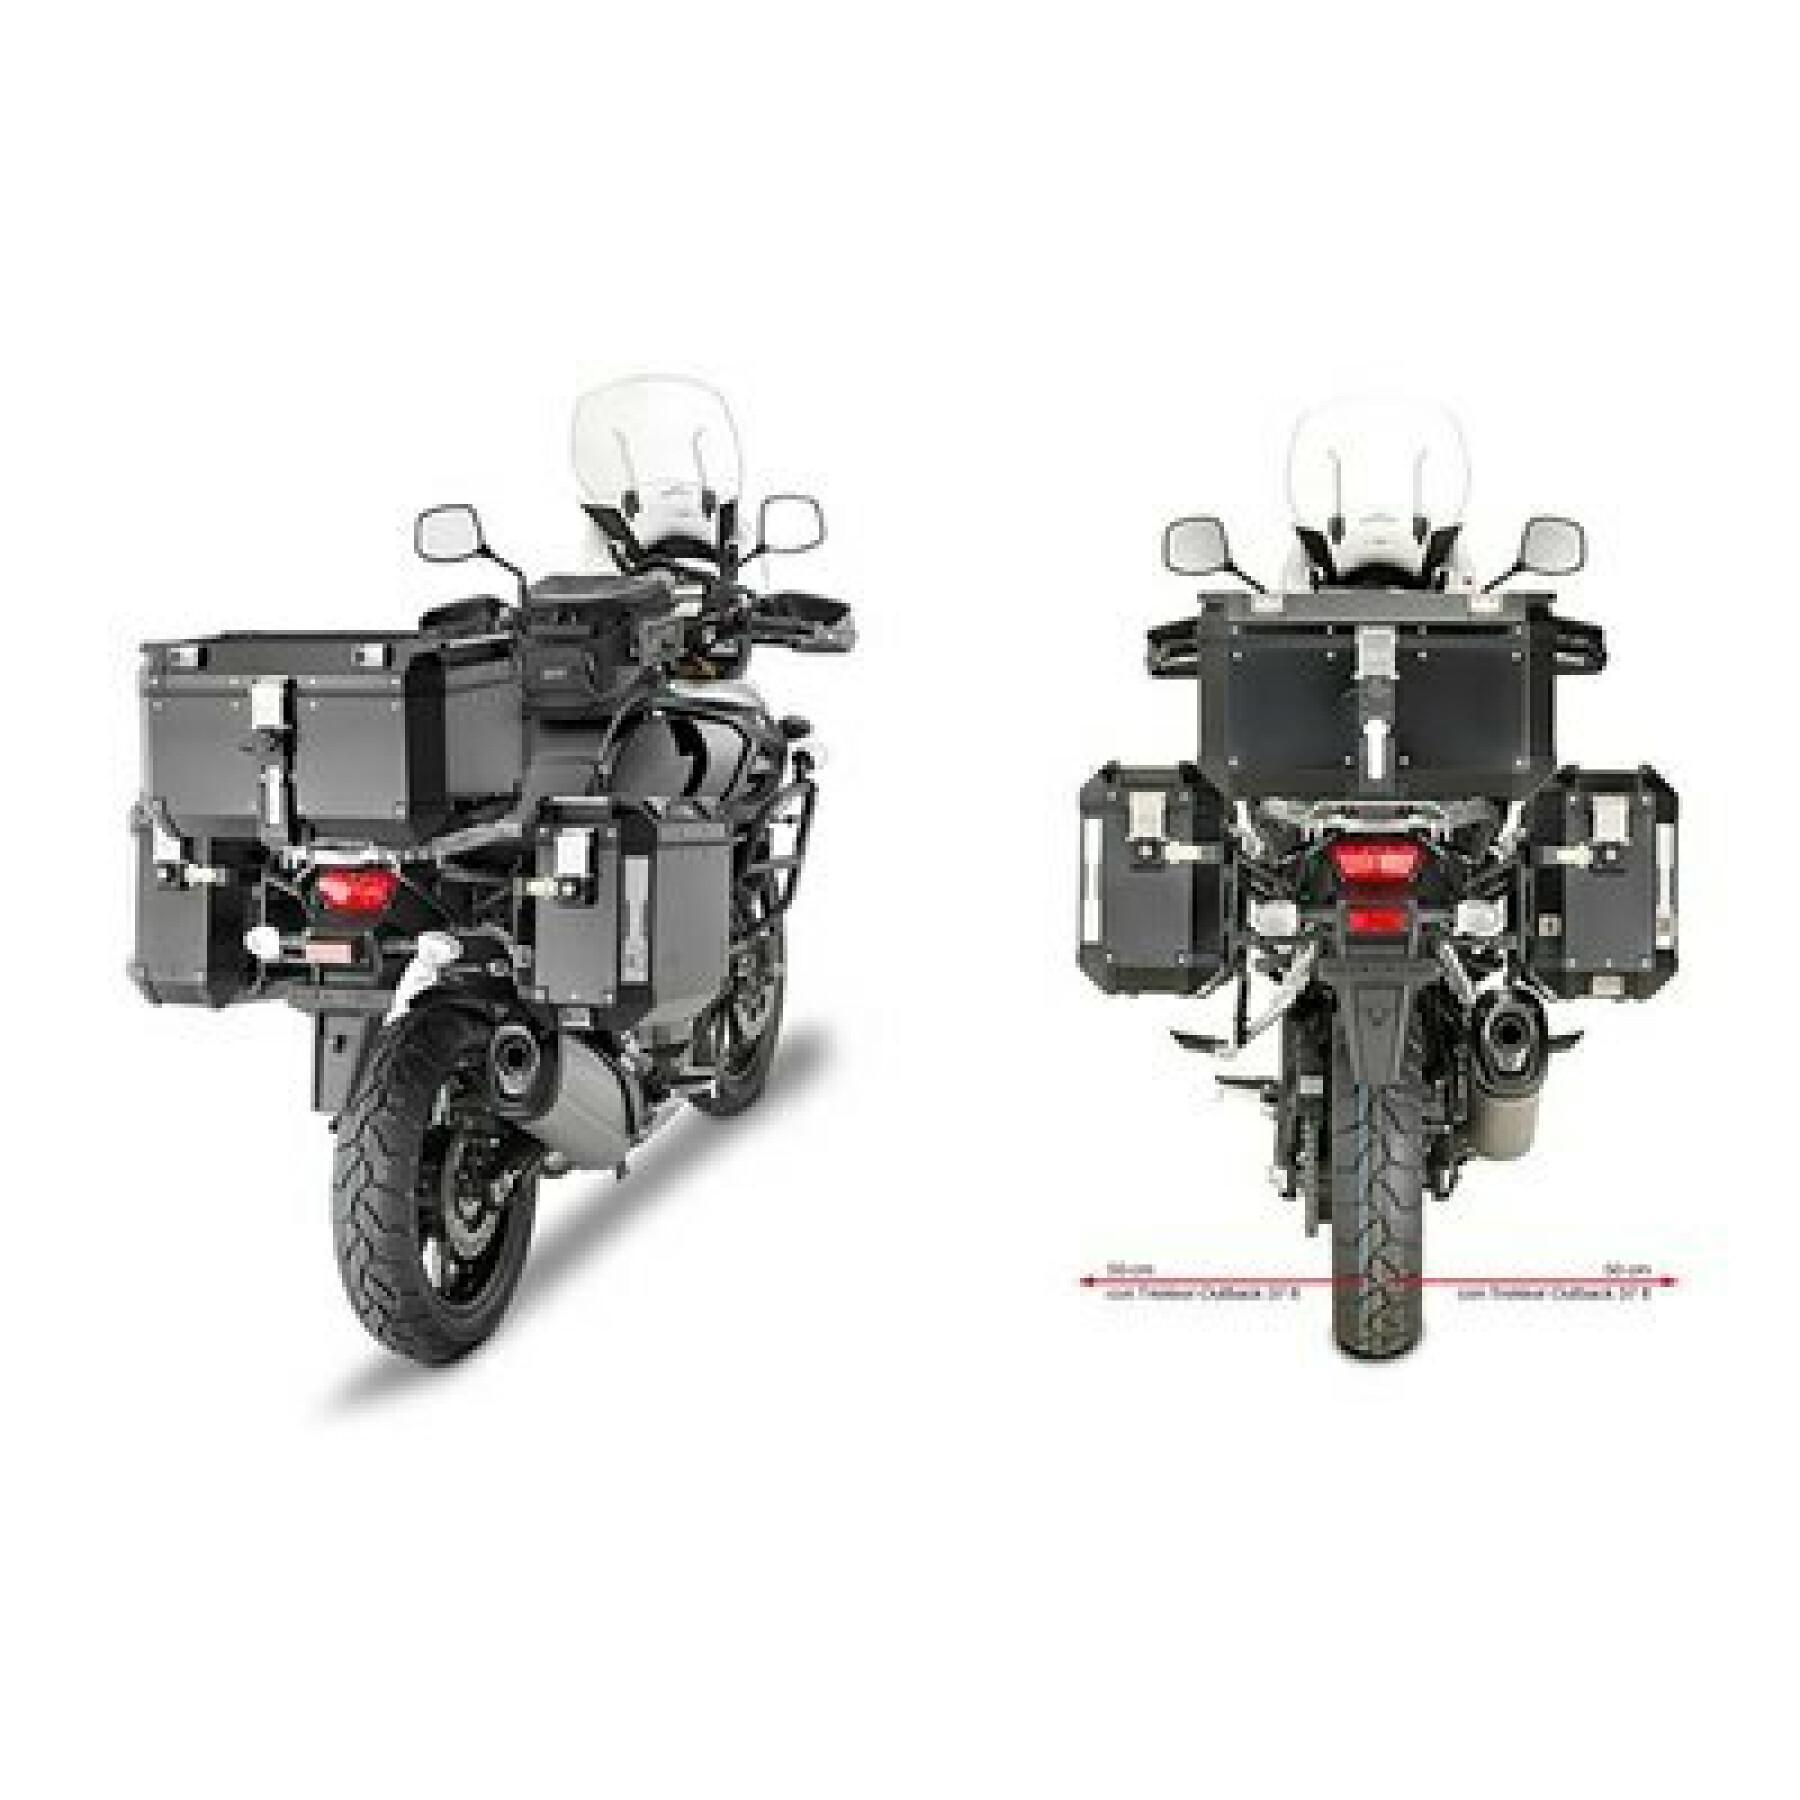 Sidostöd för motorcykel Givi Monokey Cam-Side Suzuki Dl 1000 V-Strom (14 À 16)